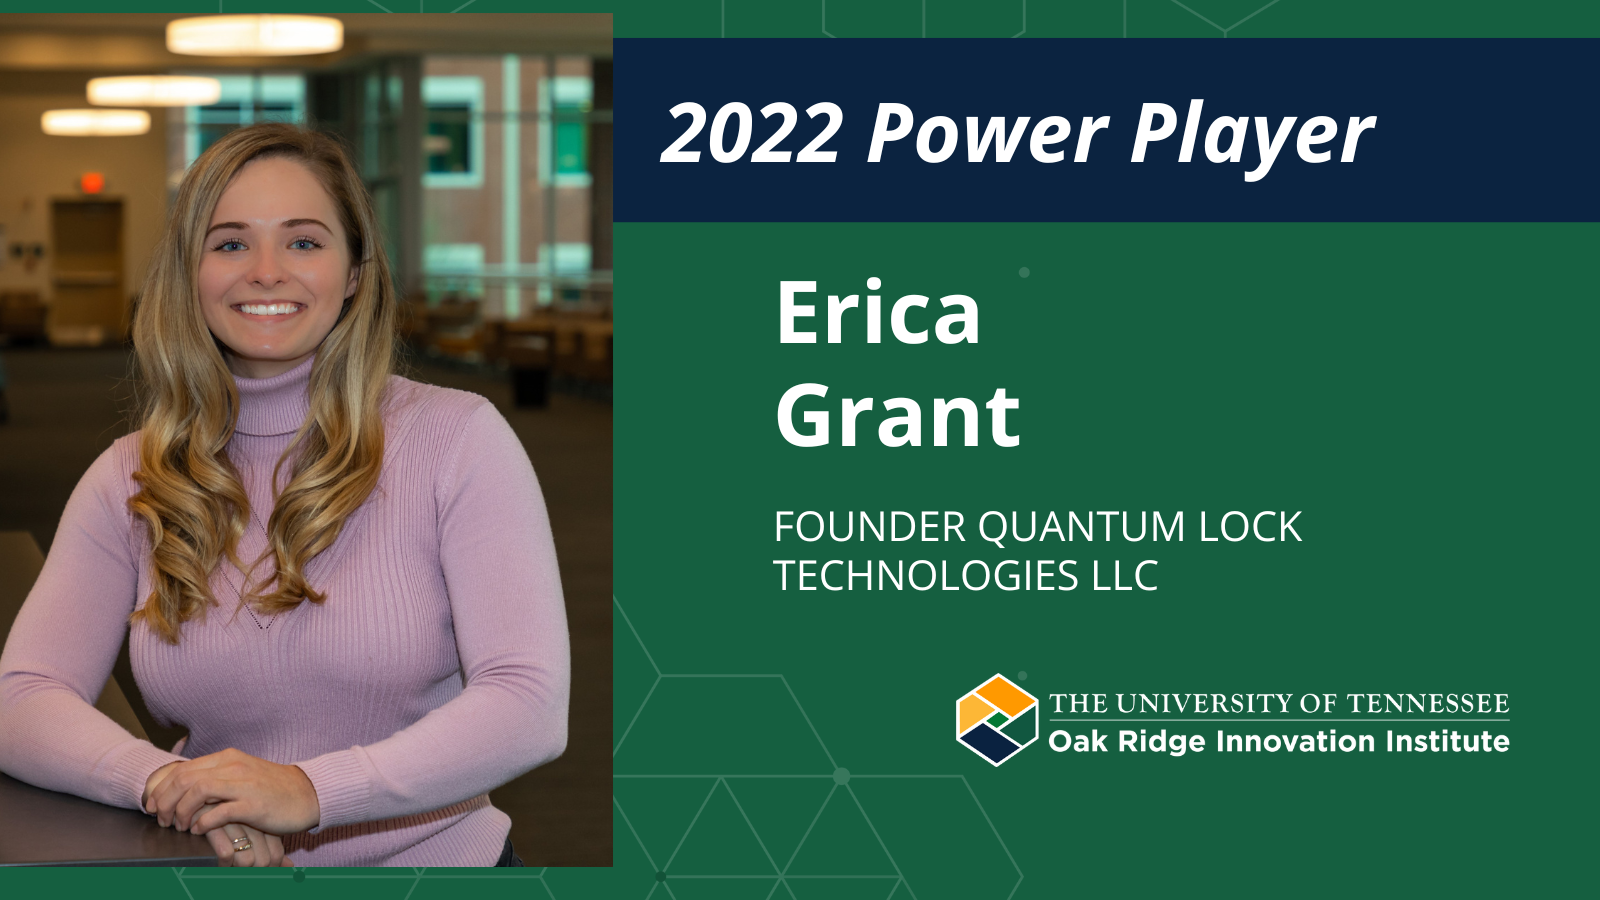 Erica Grant – Inventor and Founder of Quantum Lock Technologies LLC